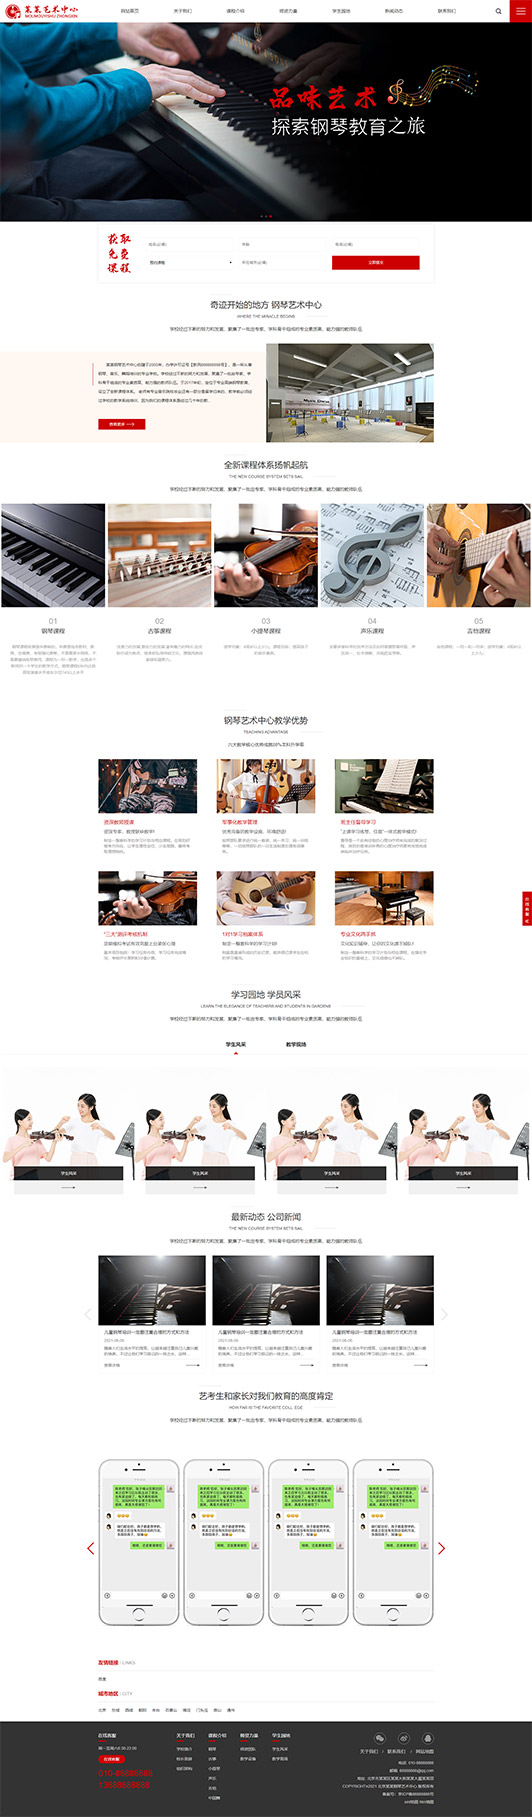 延安钢琴艺术培训公司响应式企业网站